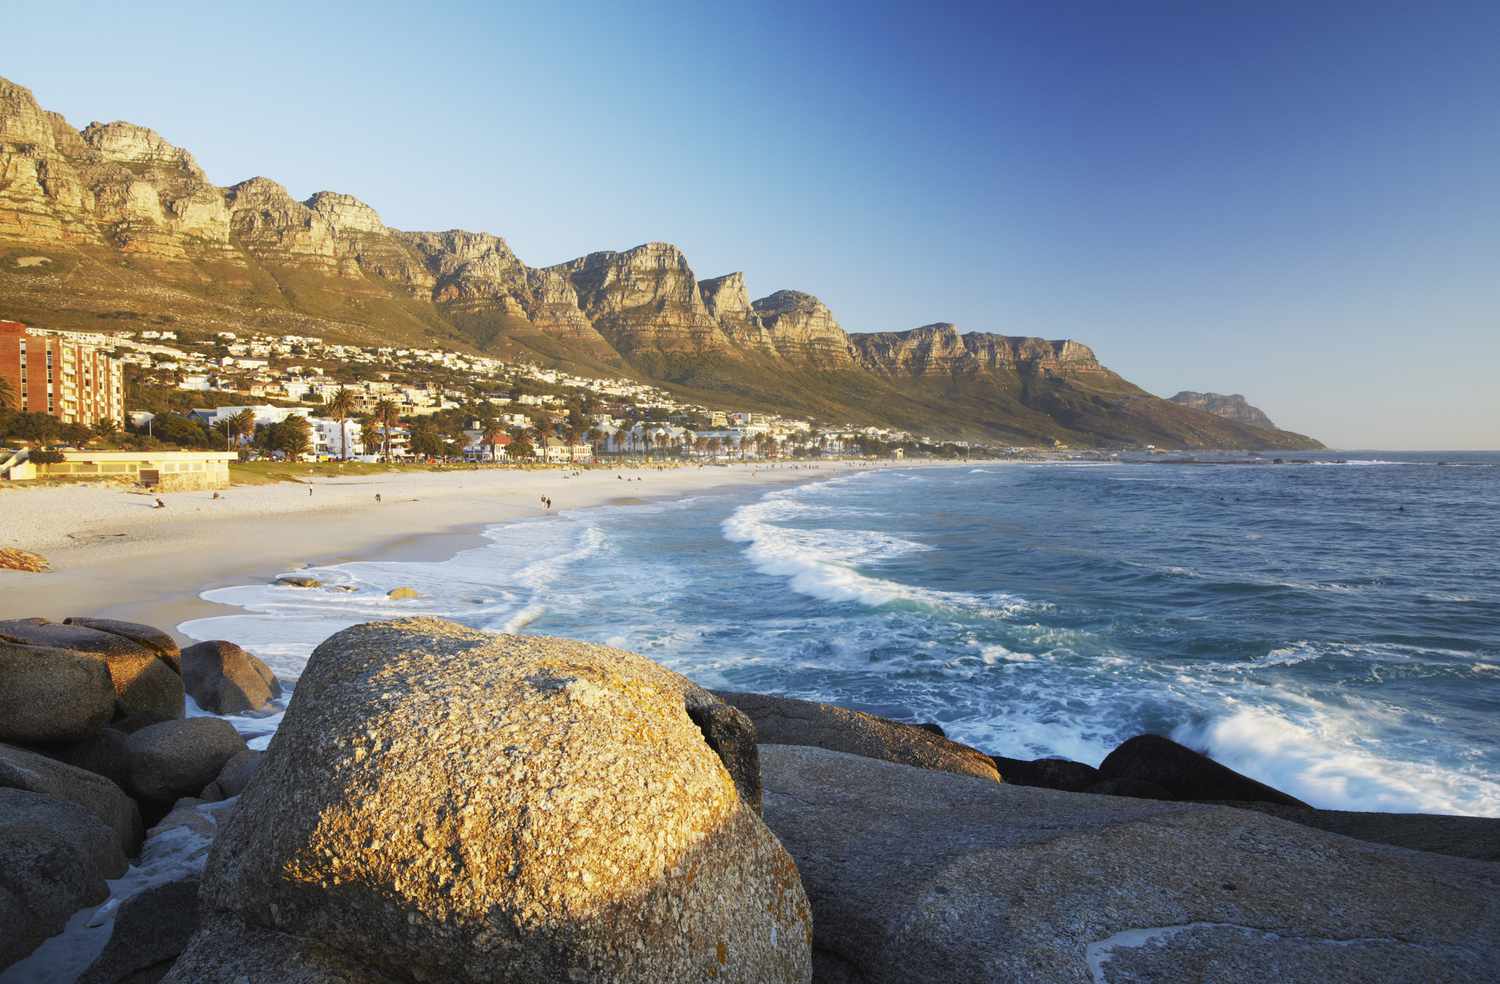 Cape Town Beaches